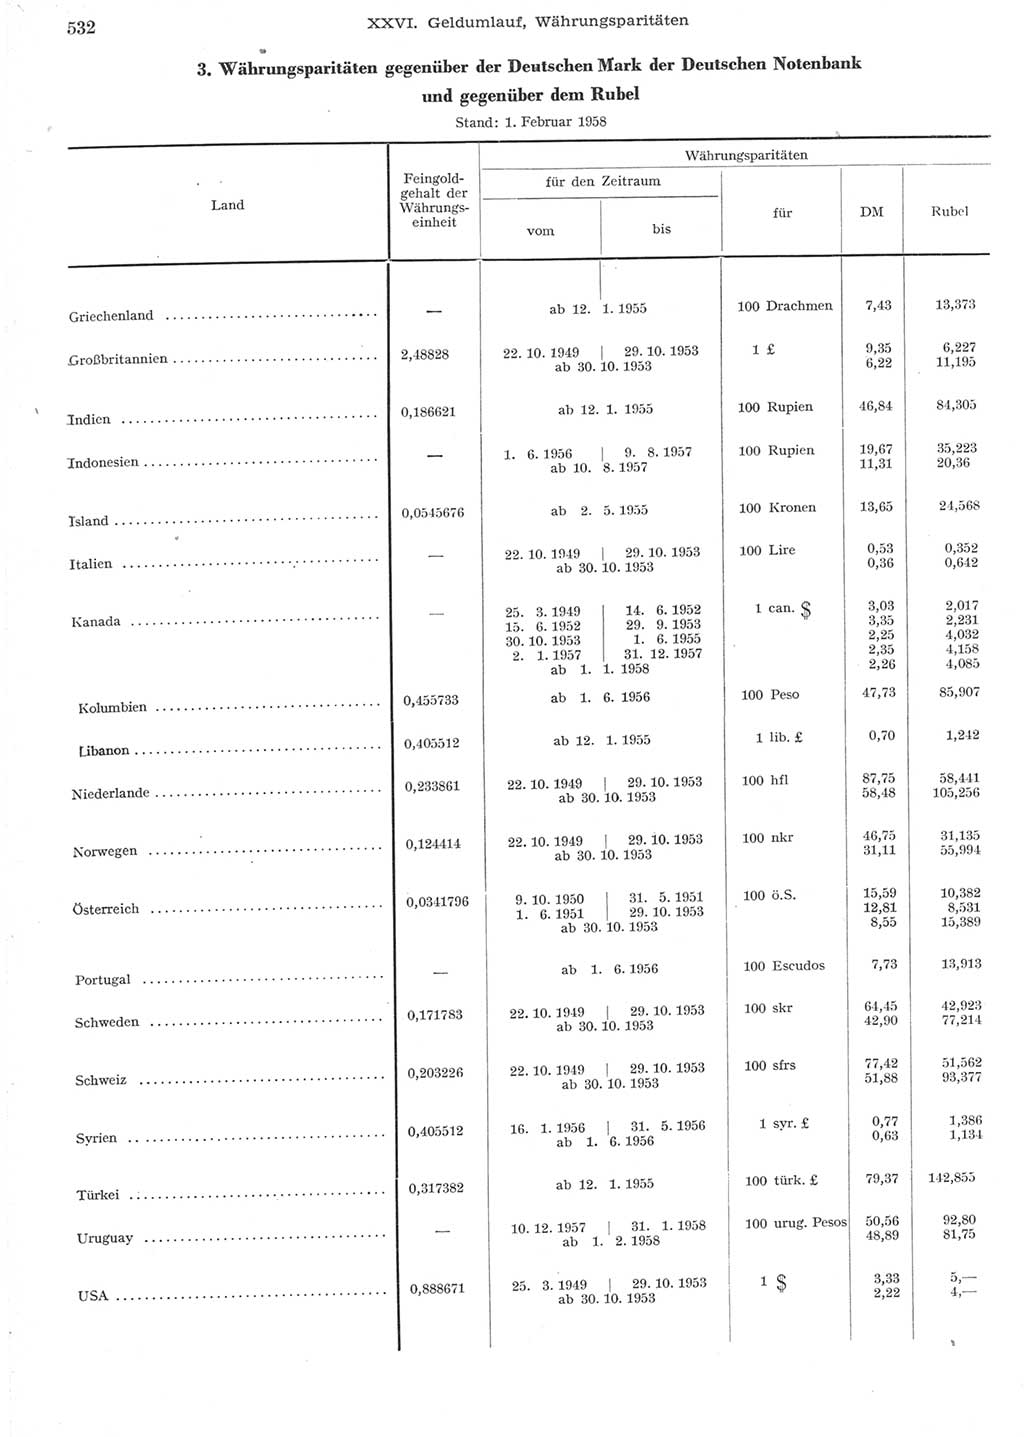 Statistisches Jahrbuch der Deutschen Demokratischen Republik (DDR) 1957, Seite 532 (Stat. Jb. DDR 1957, S. 532)